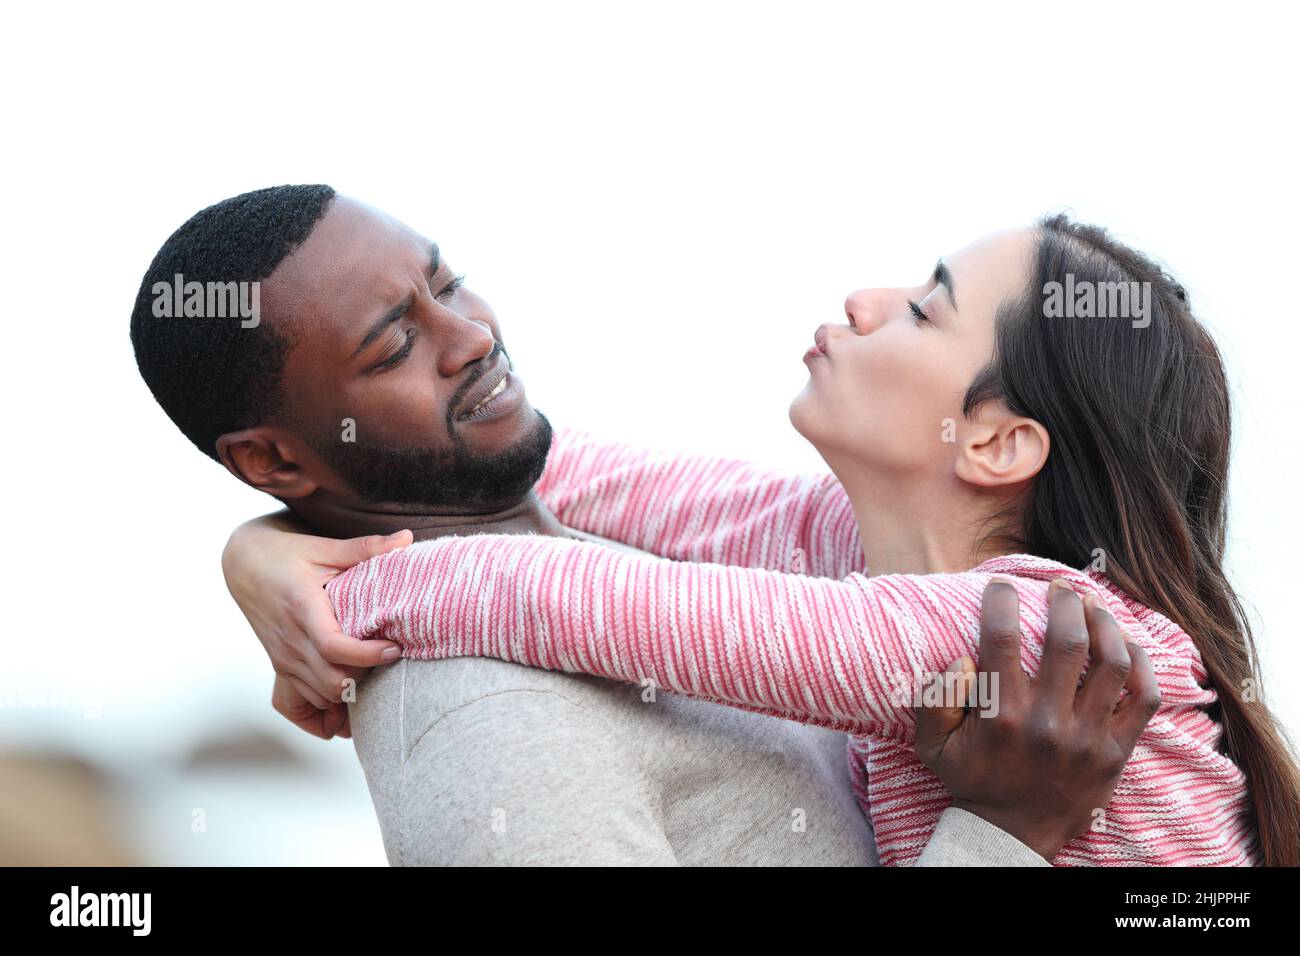 Vista lateral retrato de una mujer tratando de besar a un hombre que la aleja Foto de stock